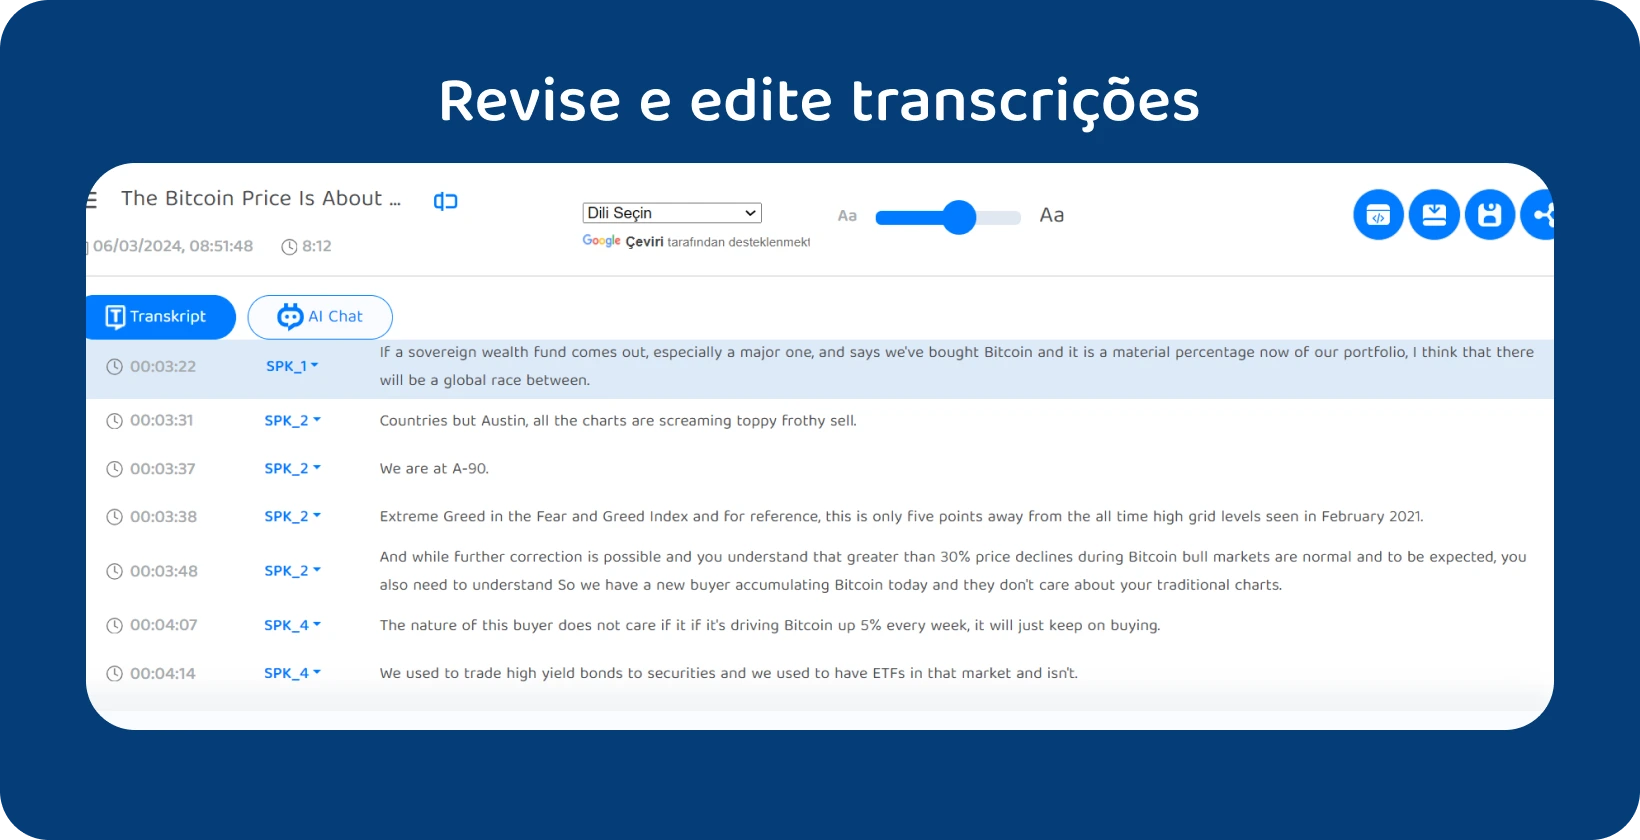 Captura de tela do painel de edição do Transkriptor com recursos para limpar e corrigir transcrições de entrevistas.